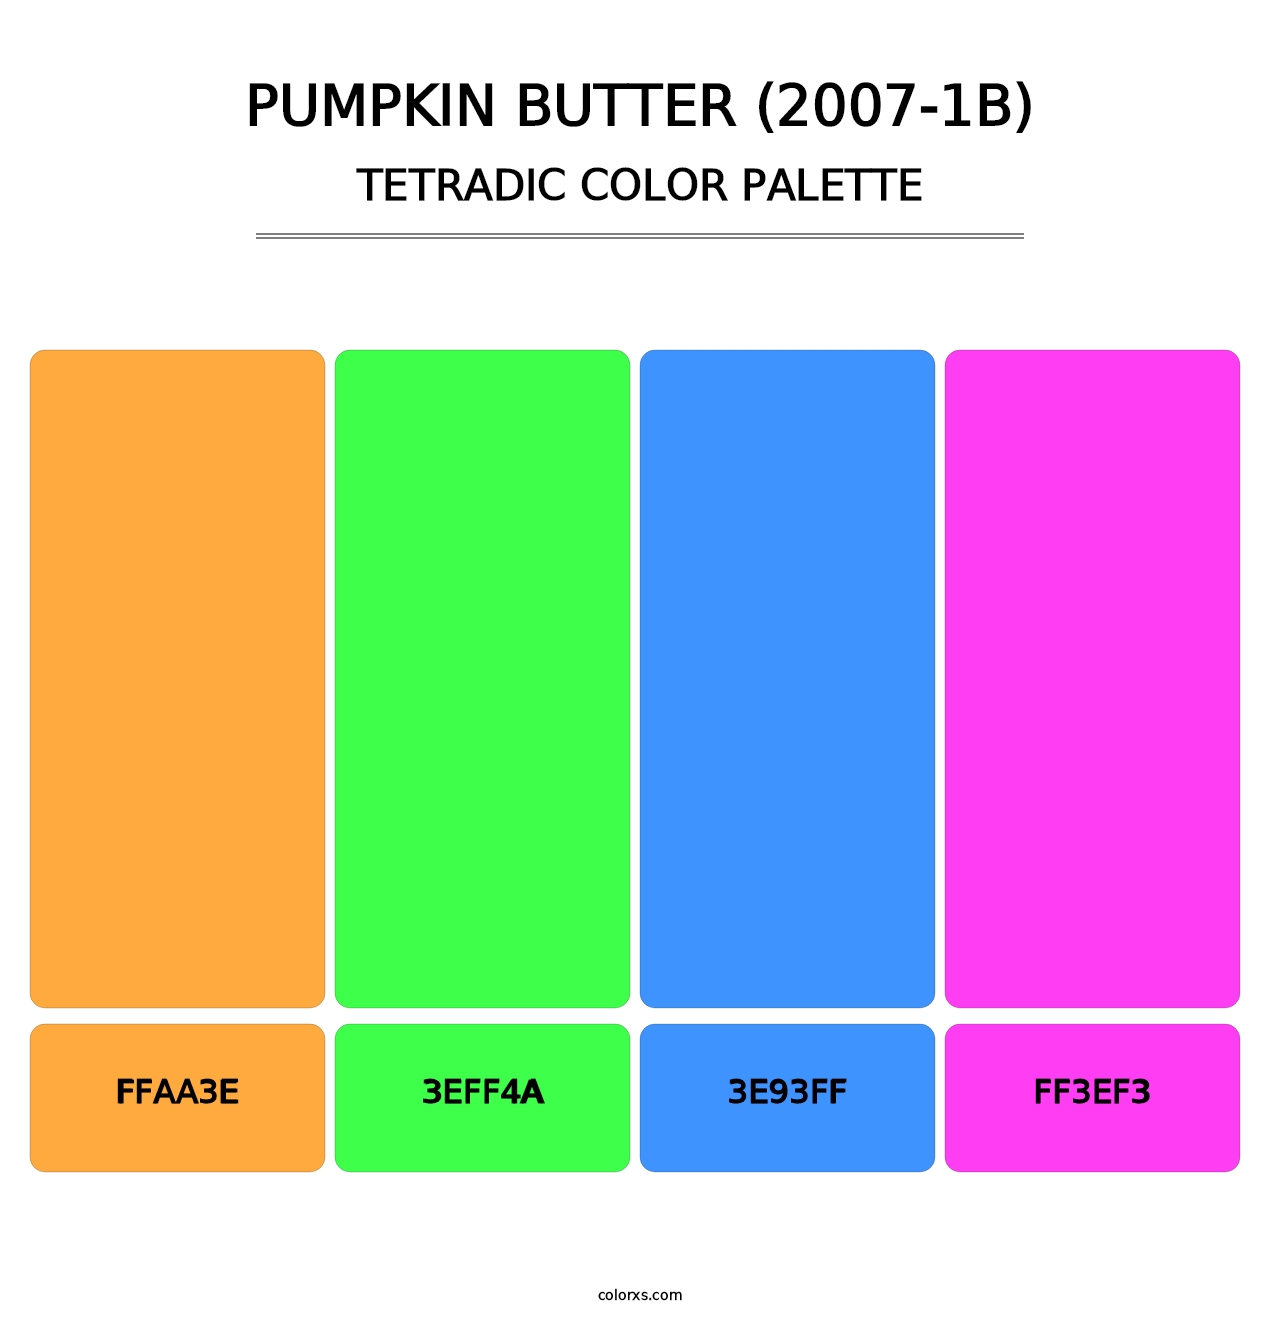 Pumpkin Butter (2007-1B) - Tetradic Color Palette